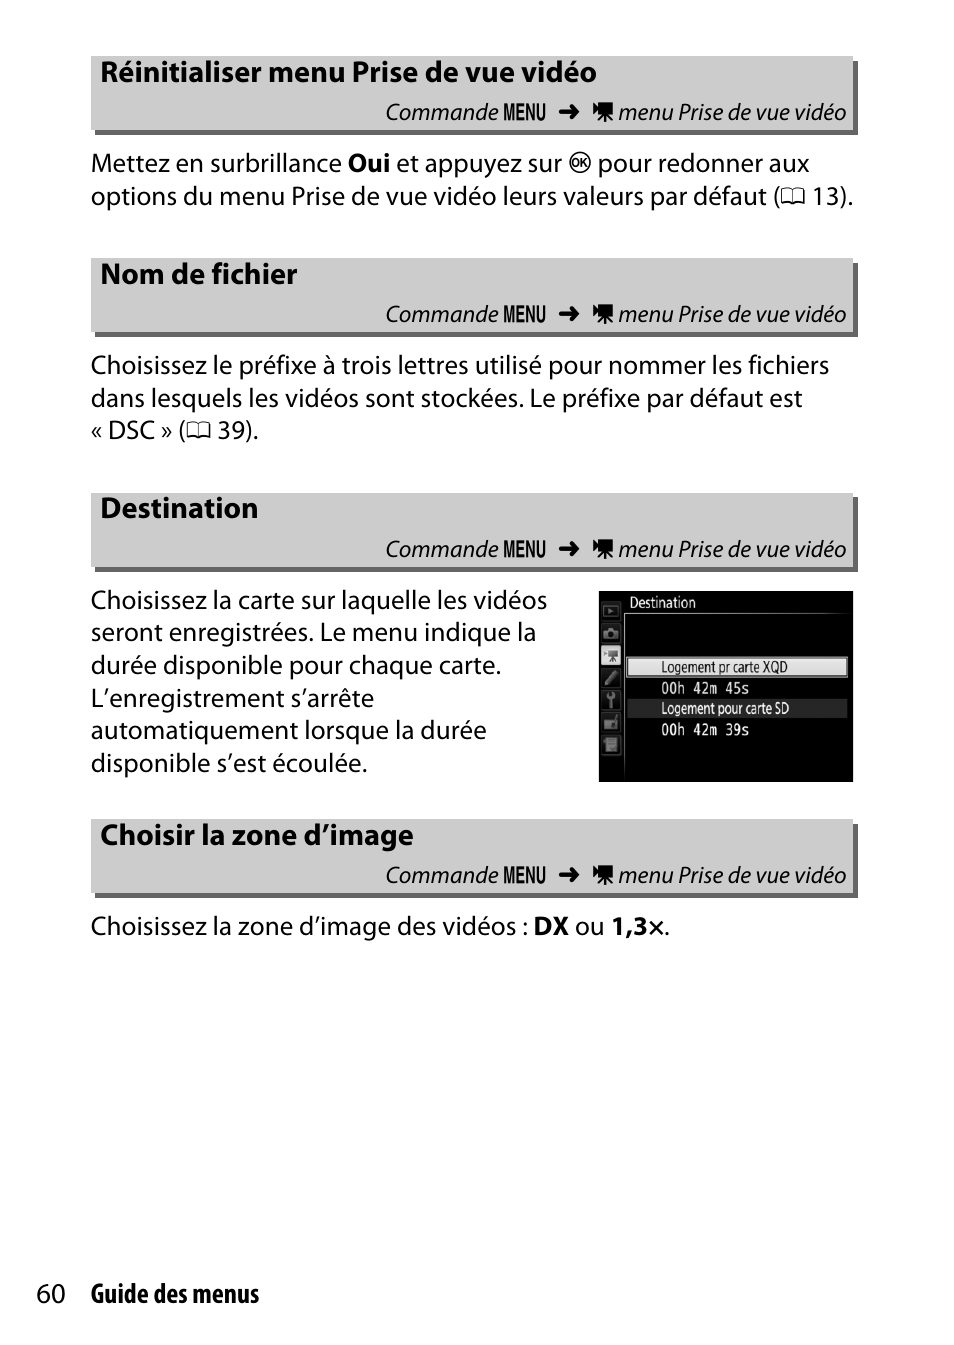 Réinitialiser menu prise de vue vidéo, Nom de fichier, Destination | Choisir la zone d’image, D’image | Nikon D500 Manuel d'utilisation | Page 60 / 207